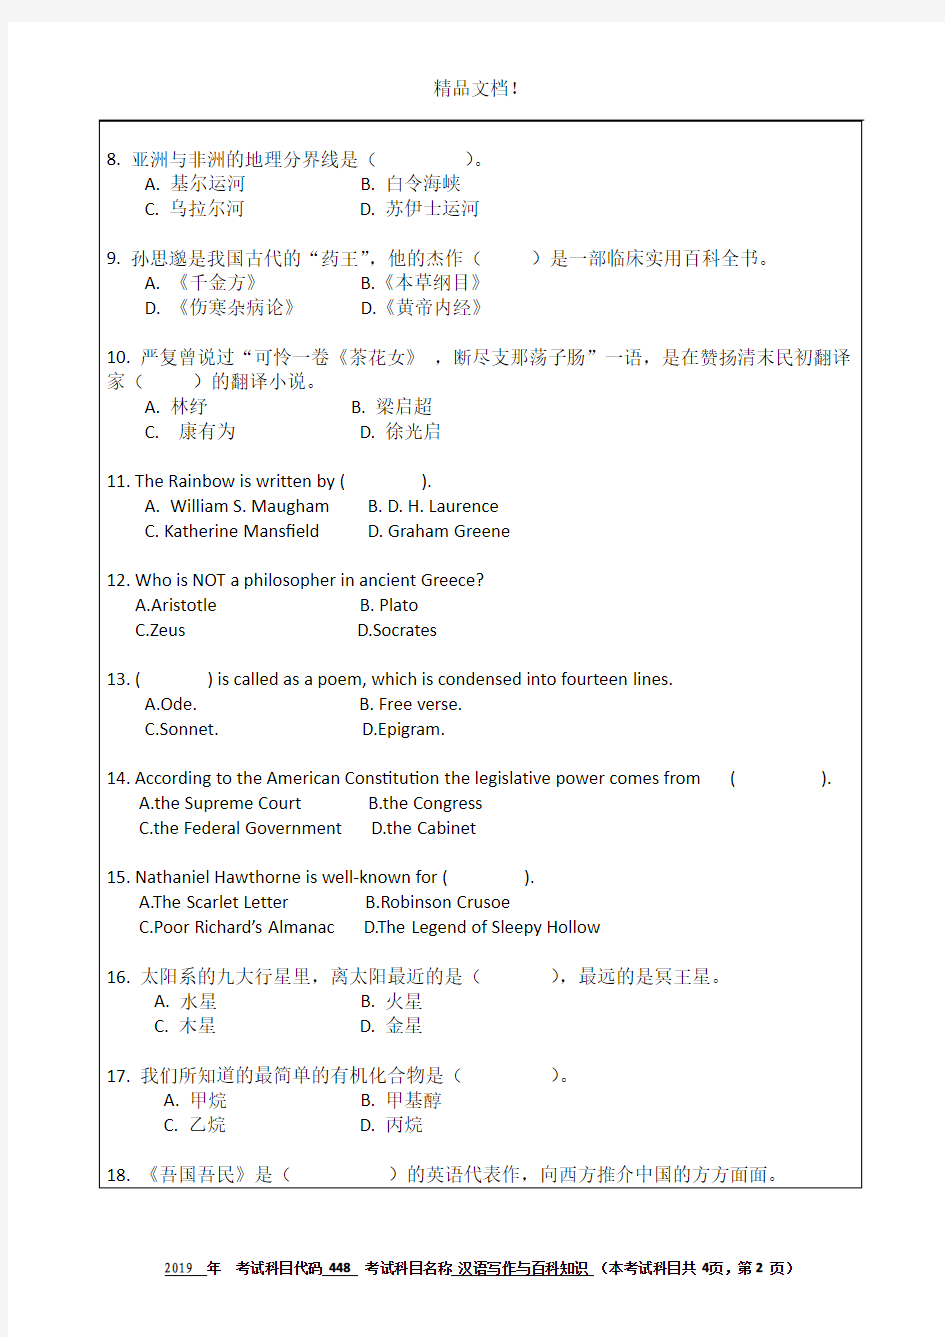 杭州师范大学448汉语写作与百科知识